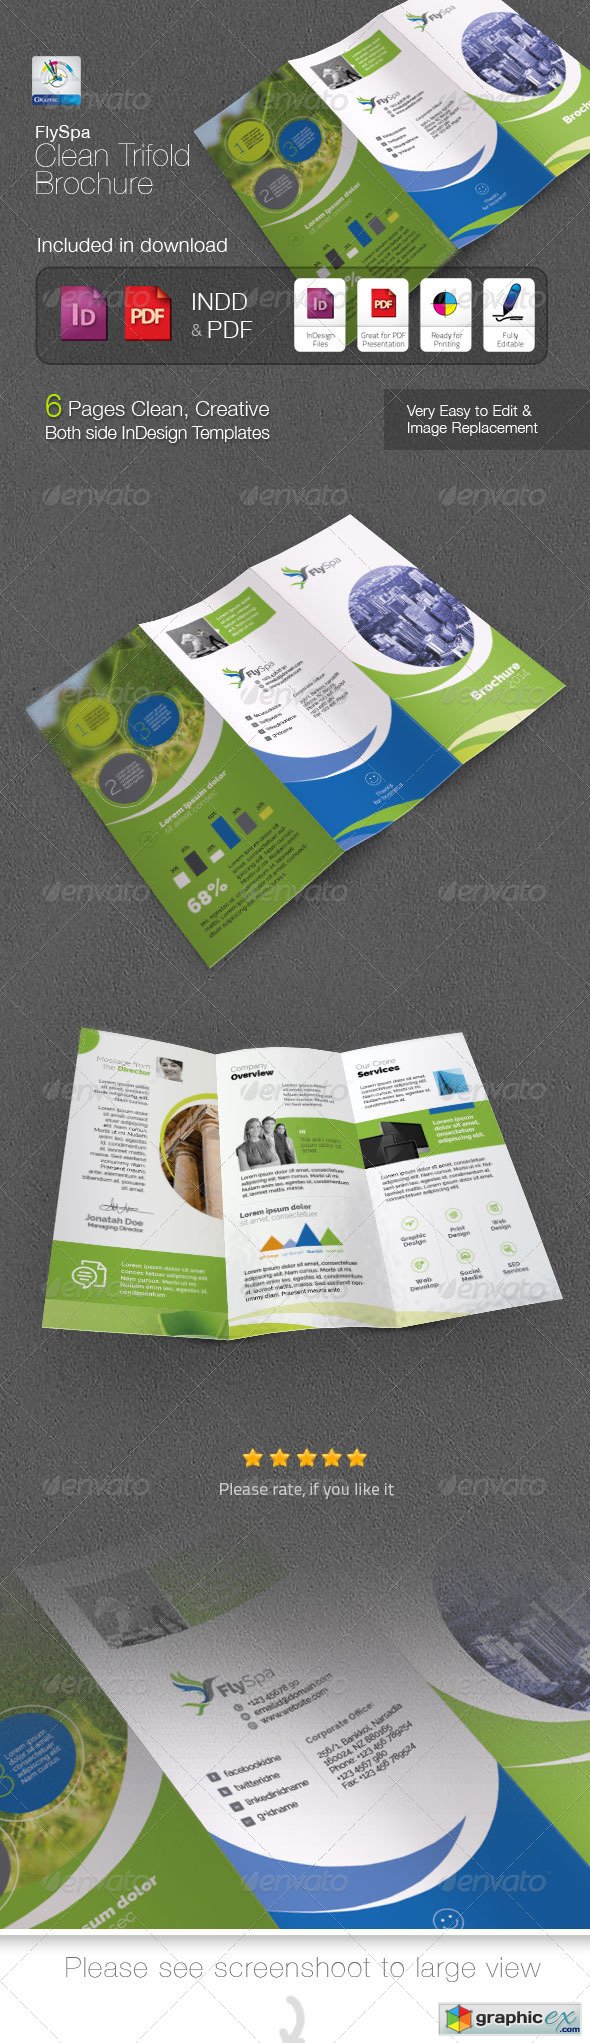 FlySpa Clean Trifold Brochure